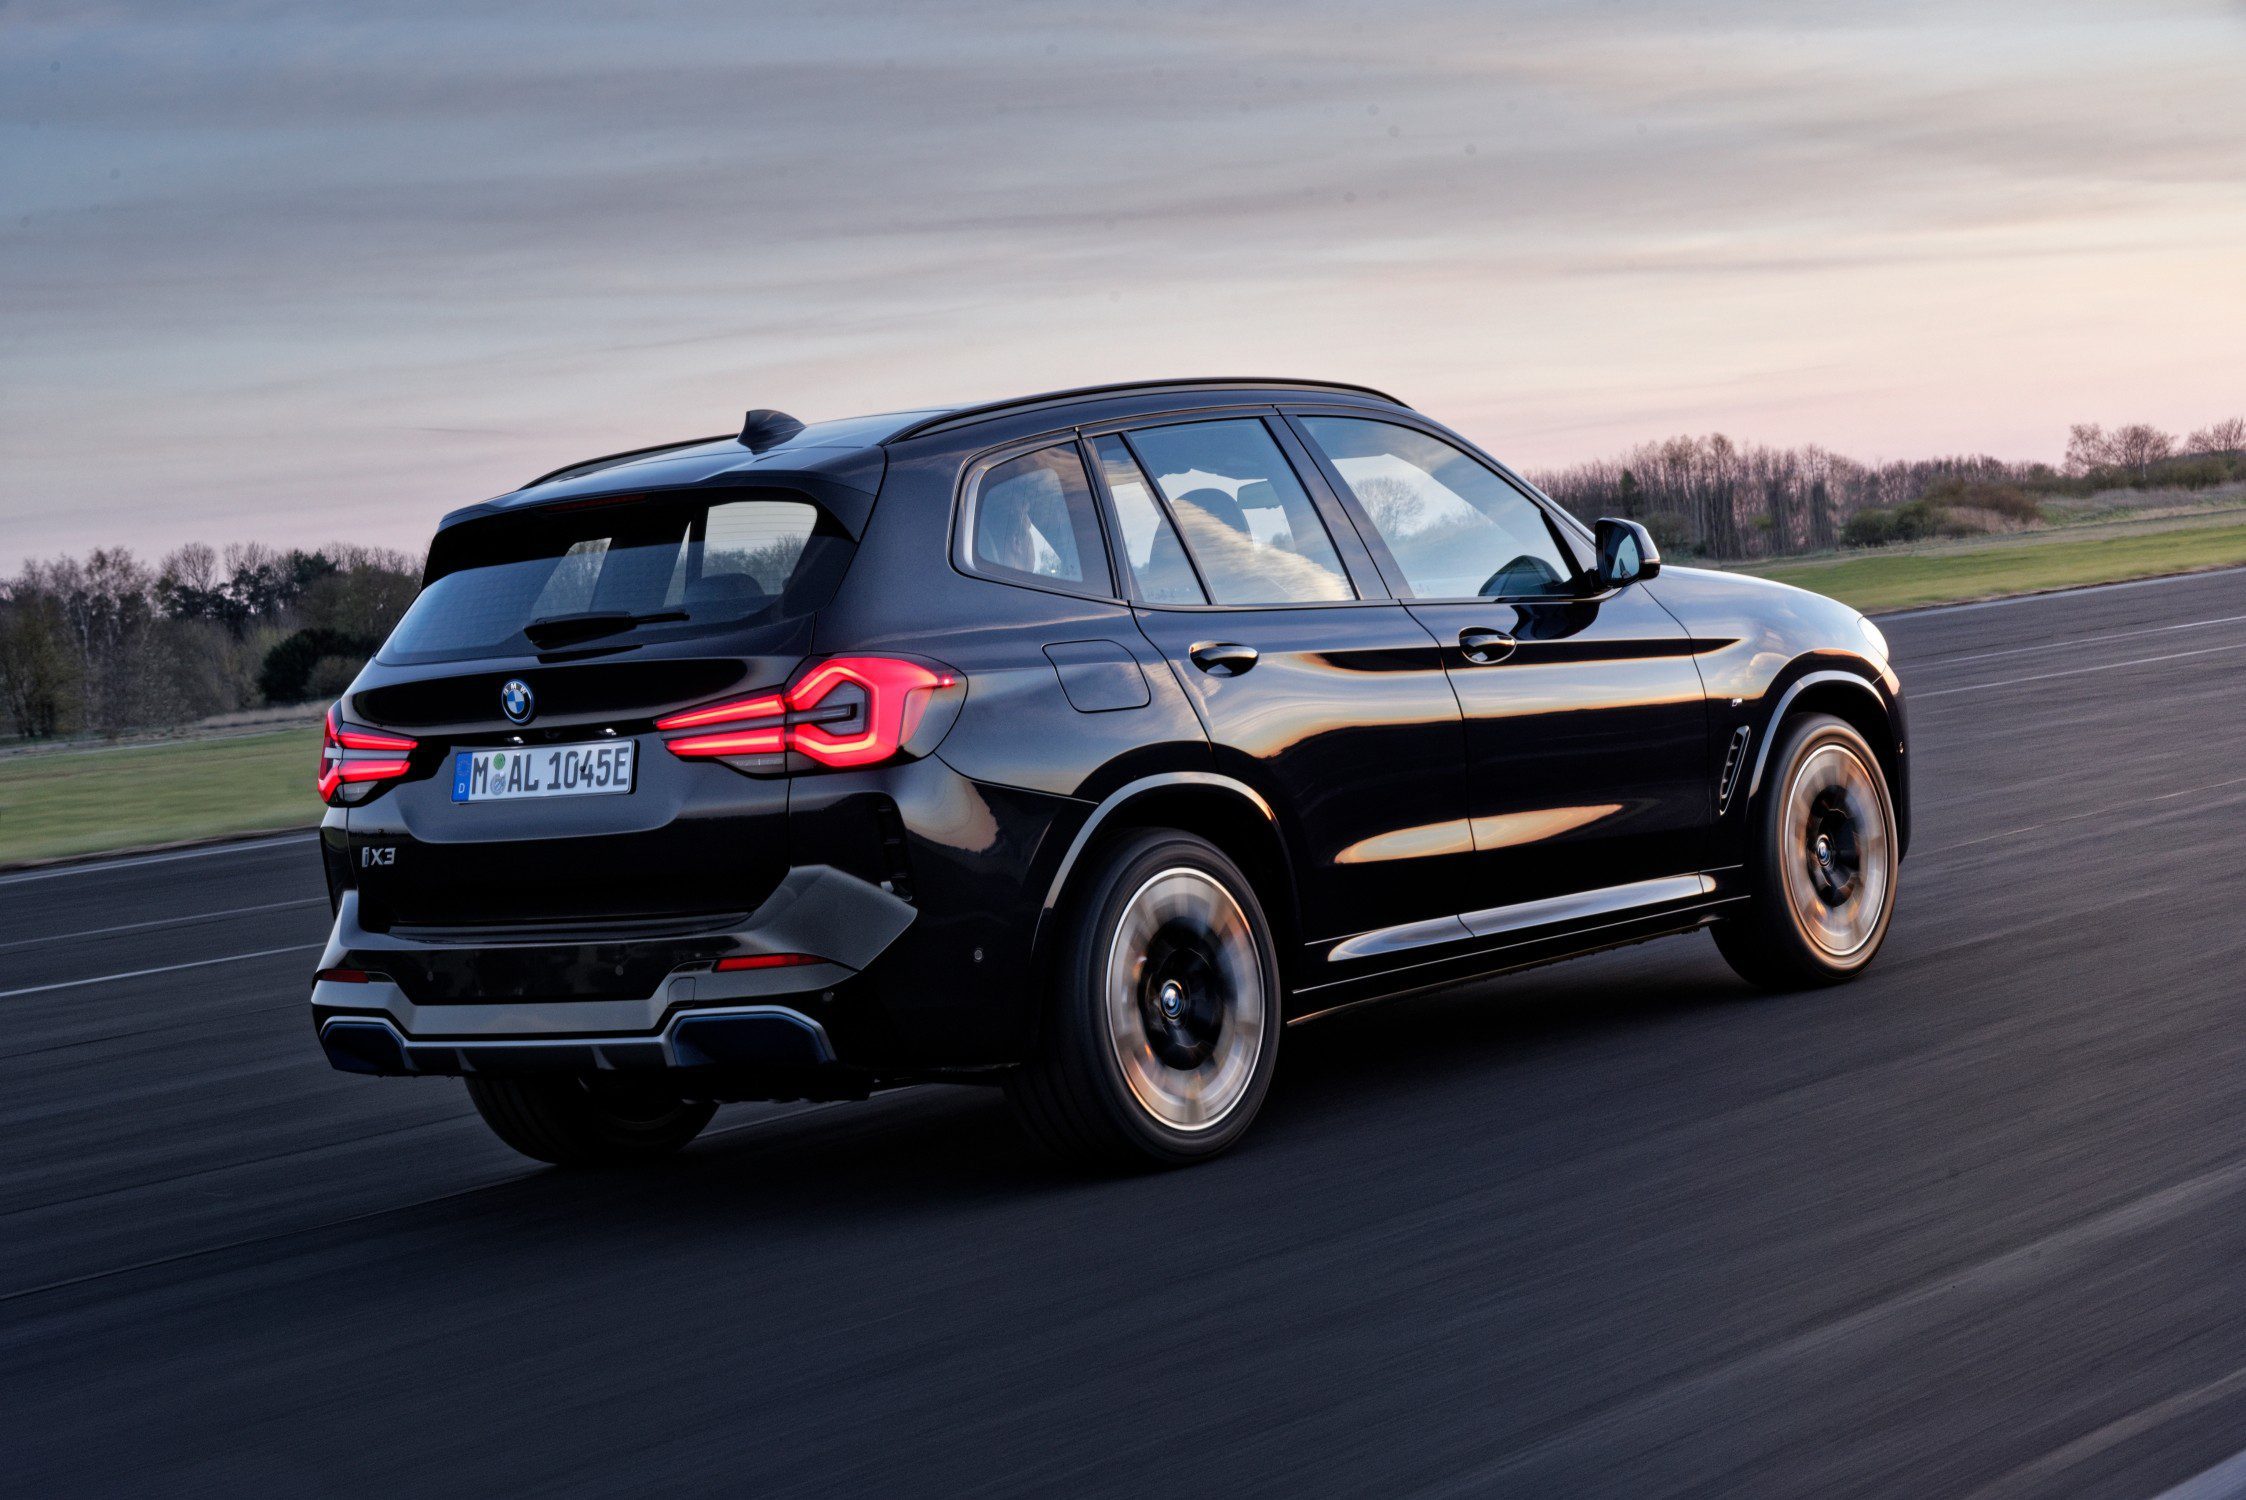 El BMW iX3 M Sport, cuenta con una potencia de 280 CV y una autonomía estimada de hasta 461 kilómetros. Es el compañero perfecto para tus viajes. ¡Descúbrelo!